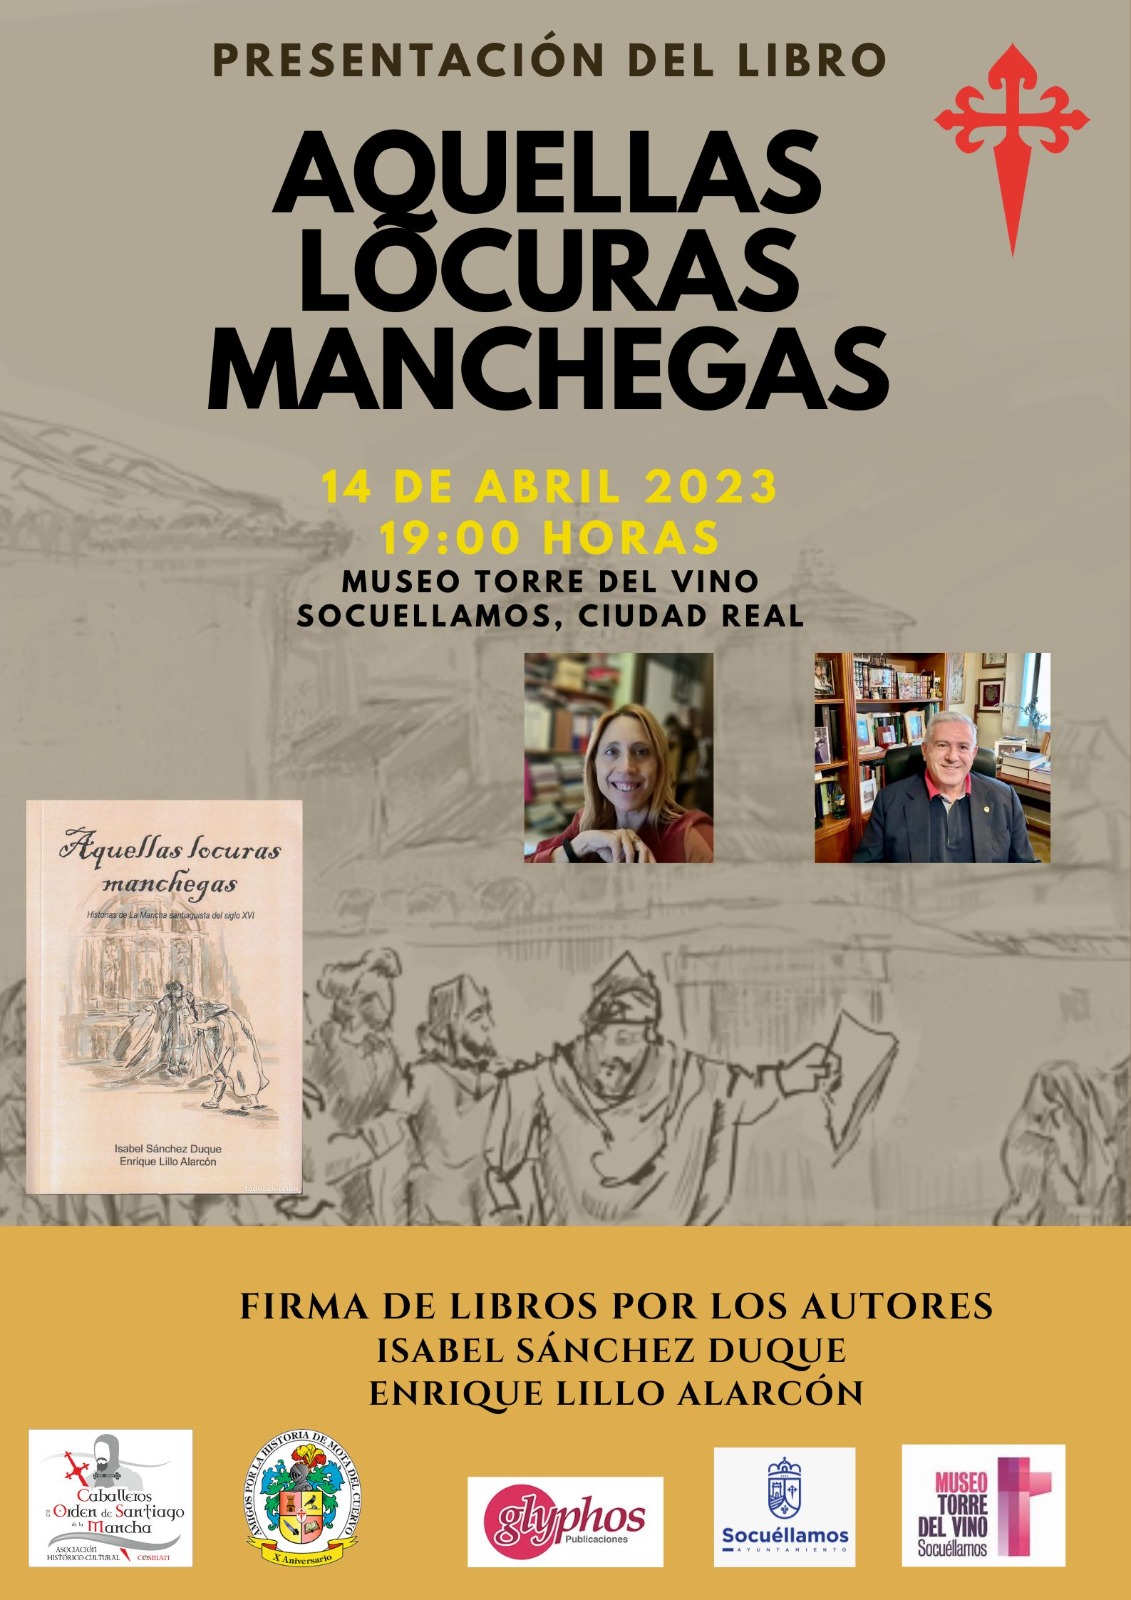 Presentación del Libro "Aquellas locuras Manchegas" en Socuéllamos